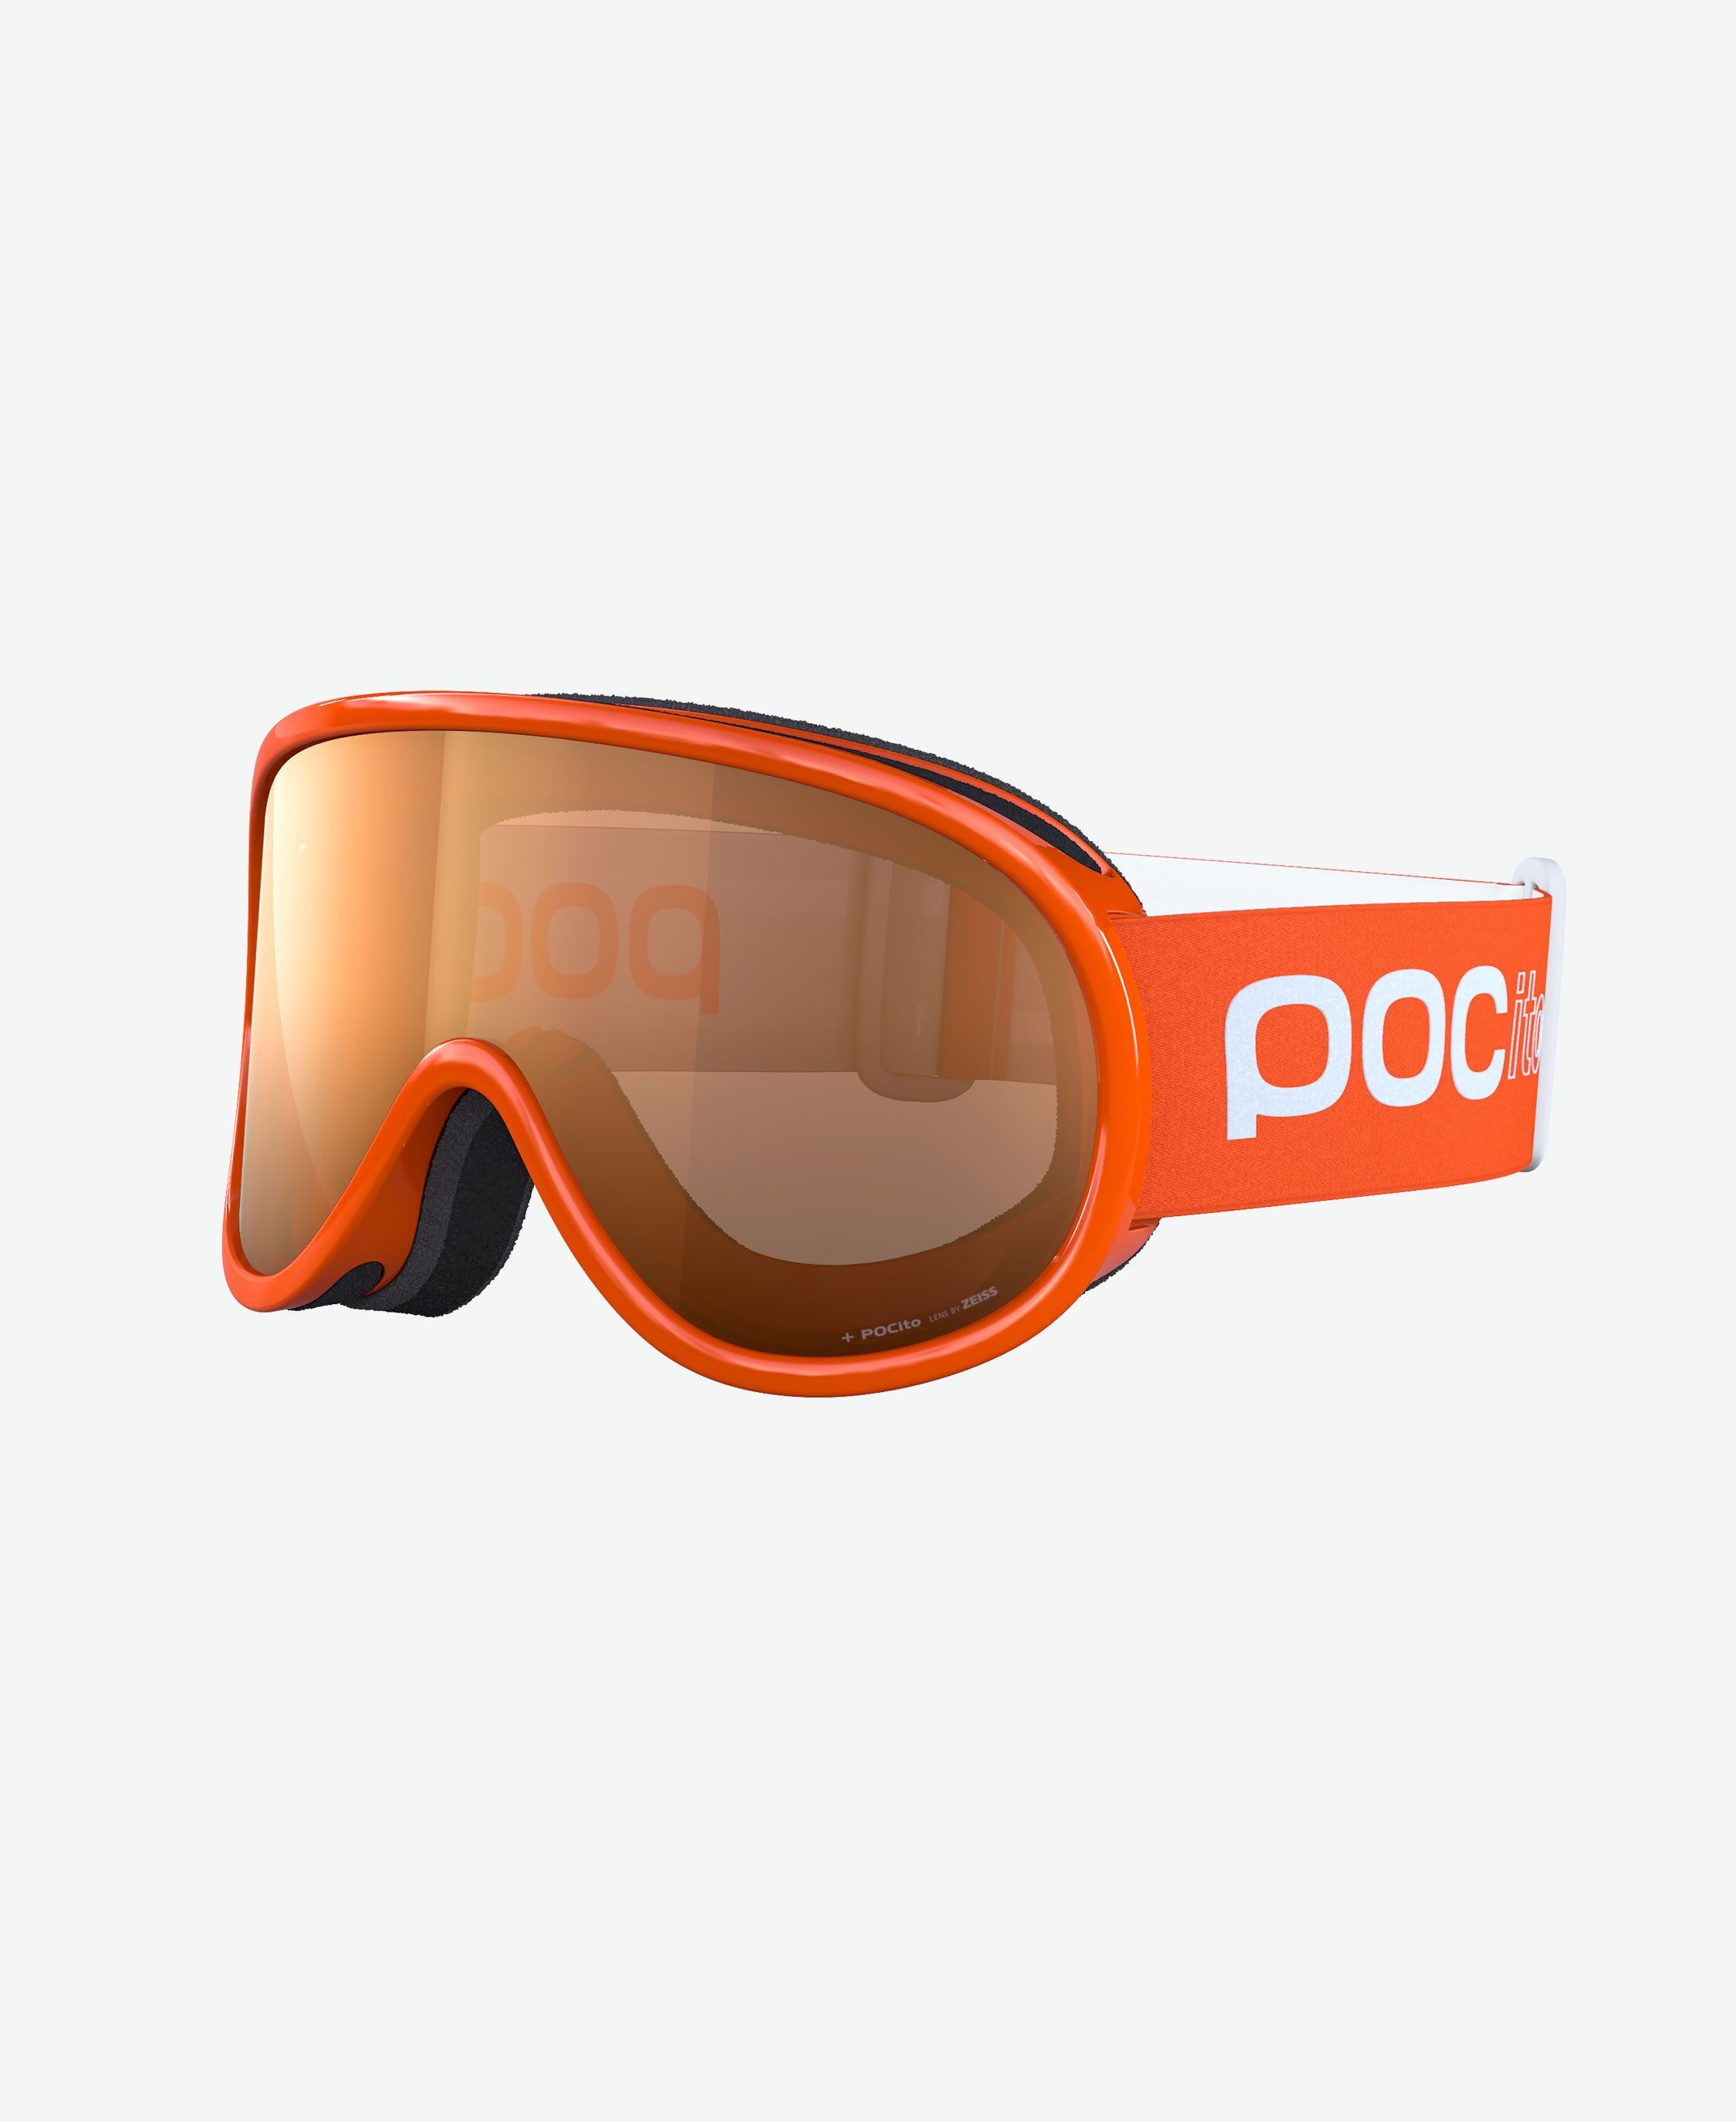 Poc Pocito Retina - Gafas de esquí - Niños